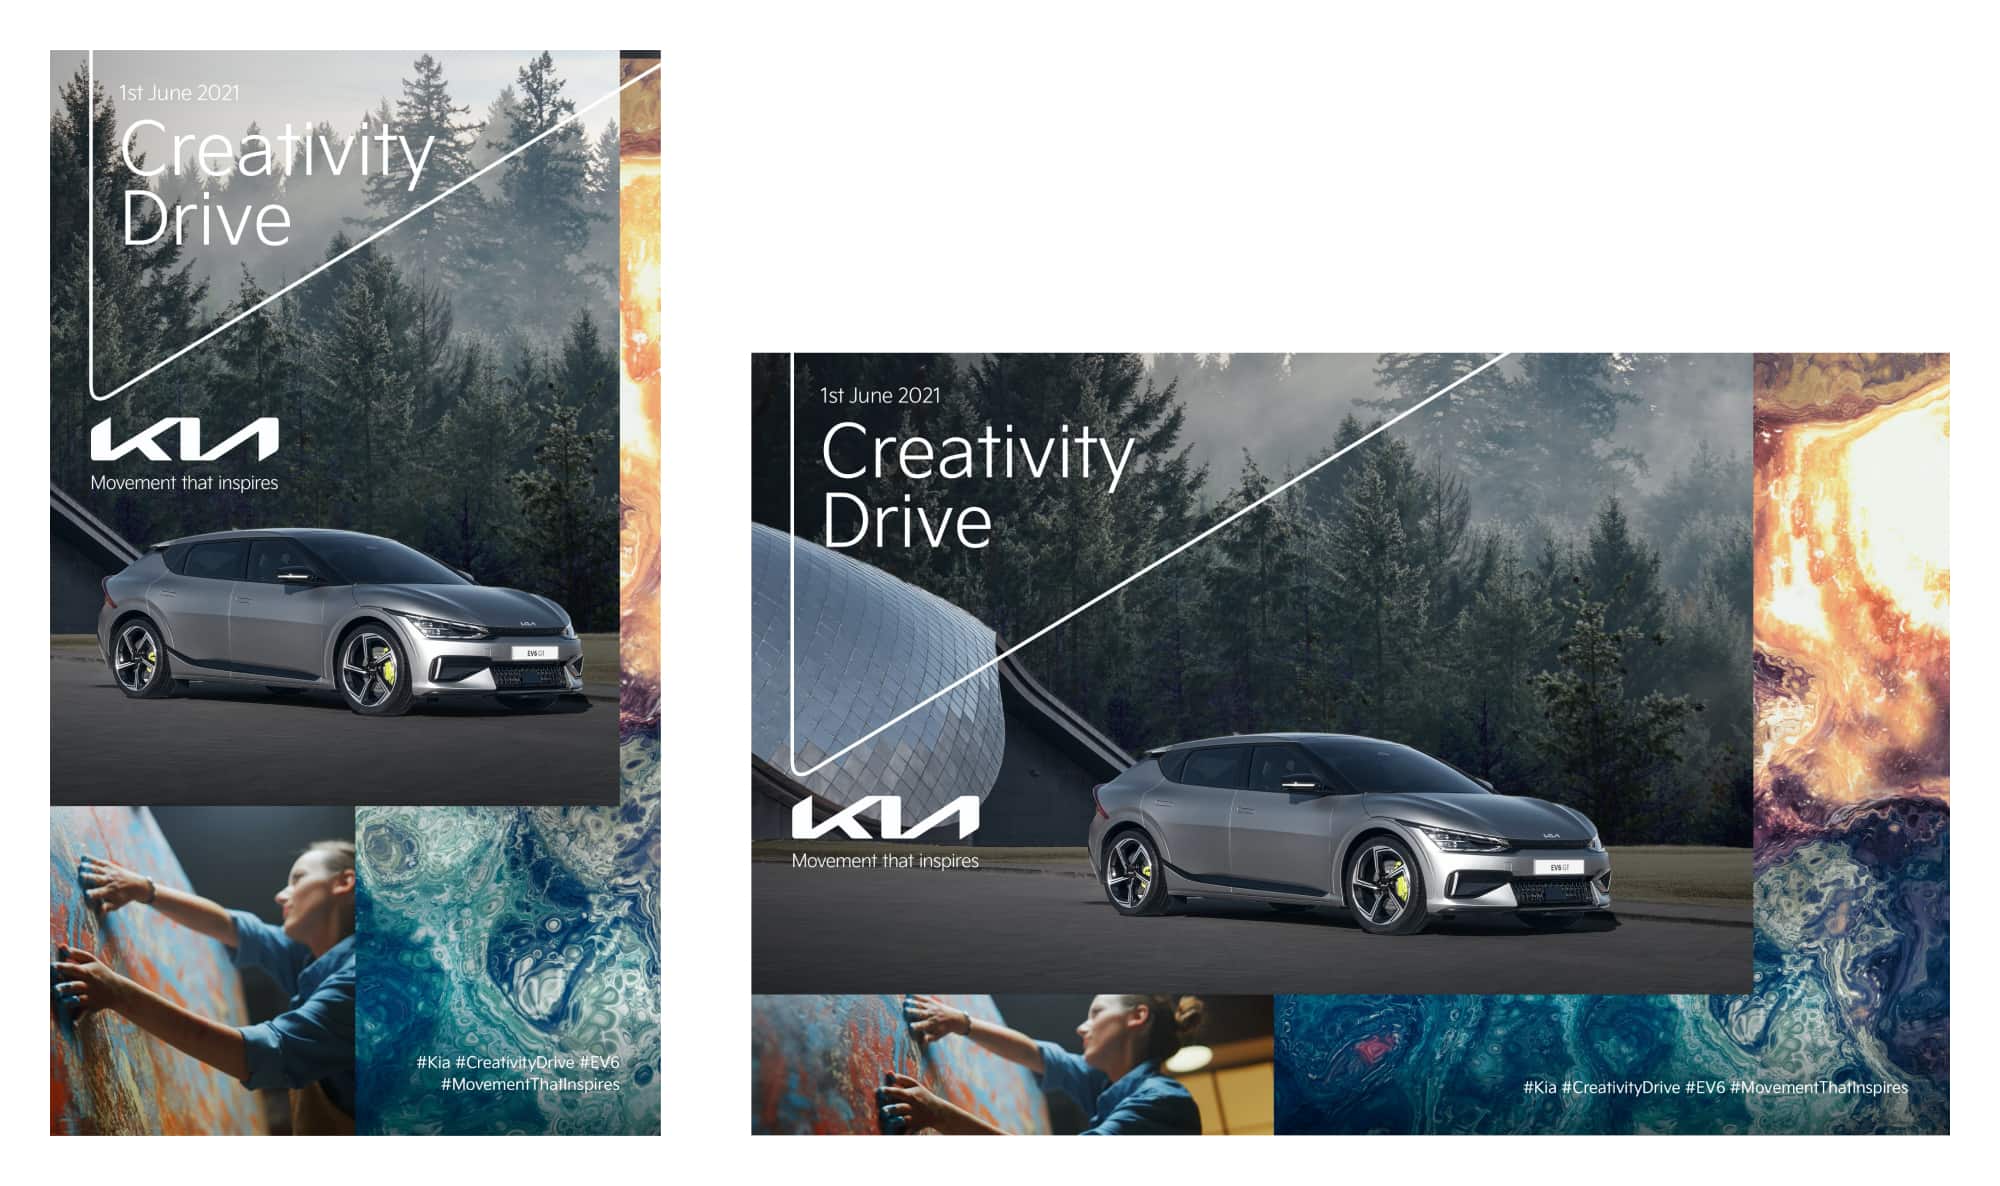 Kia Creativity Drive